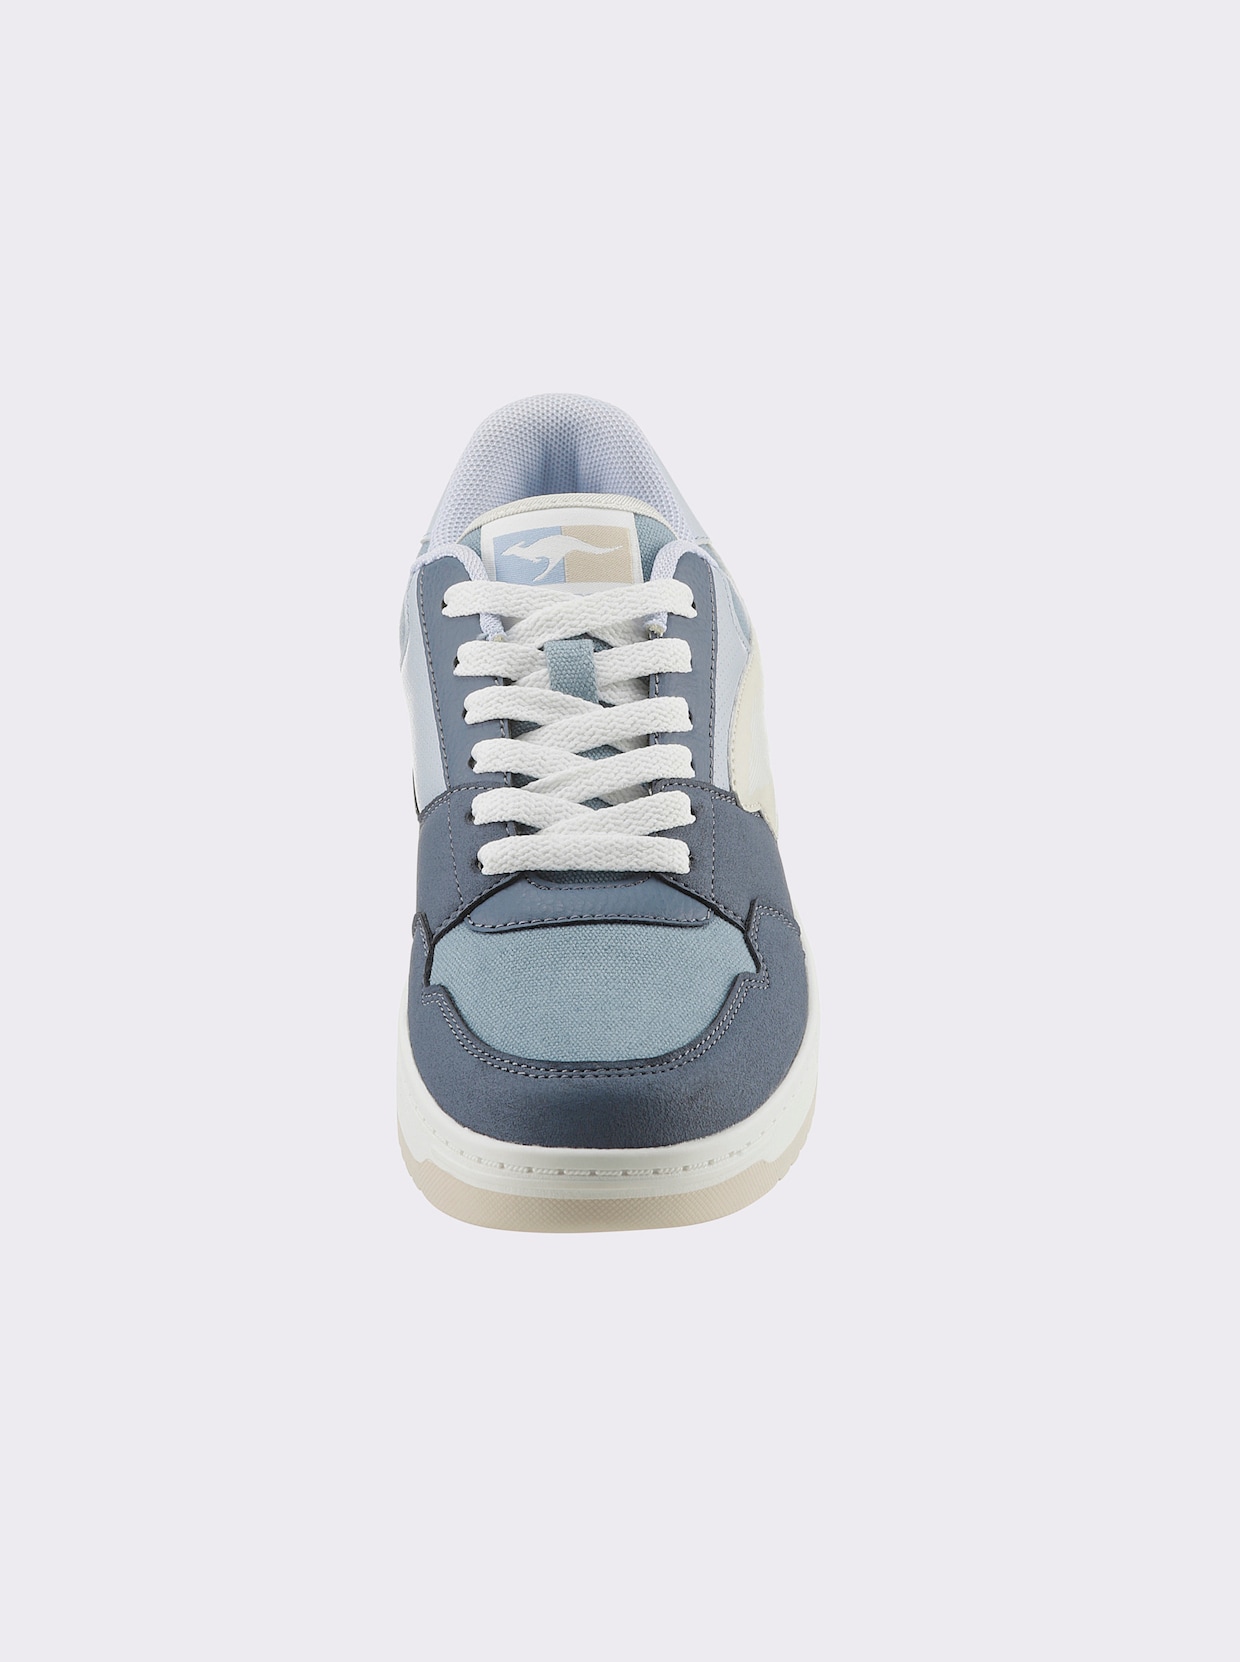 KangaROOS Sneaker - marine/bleu